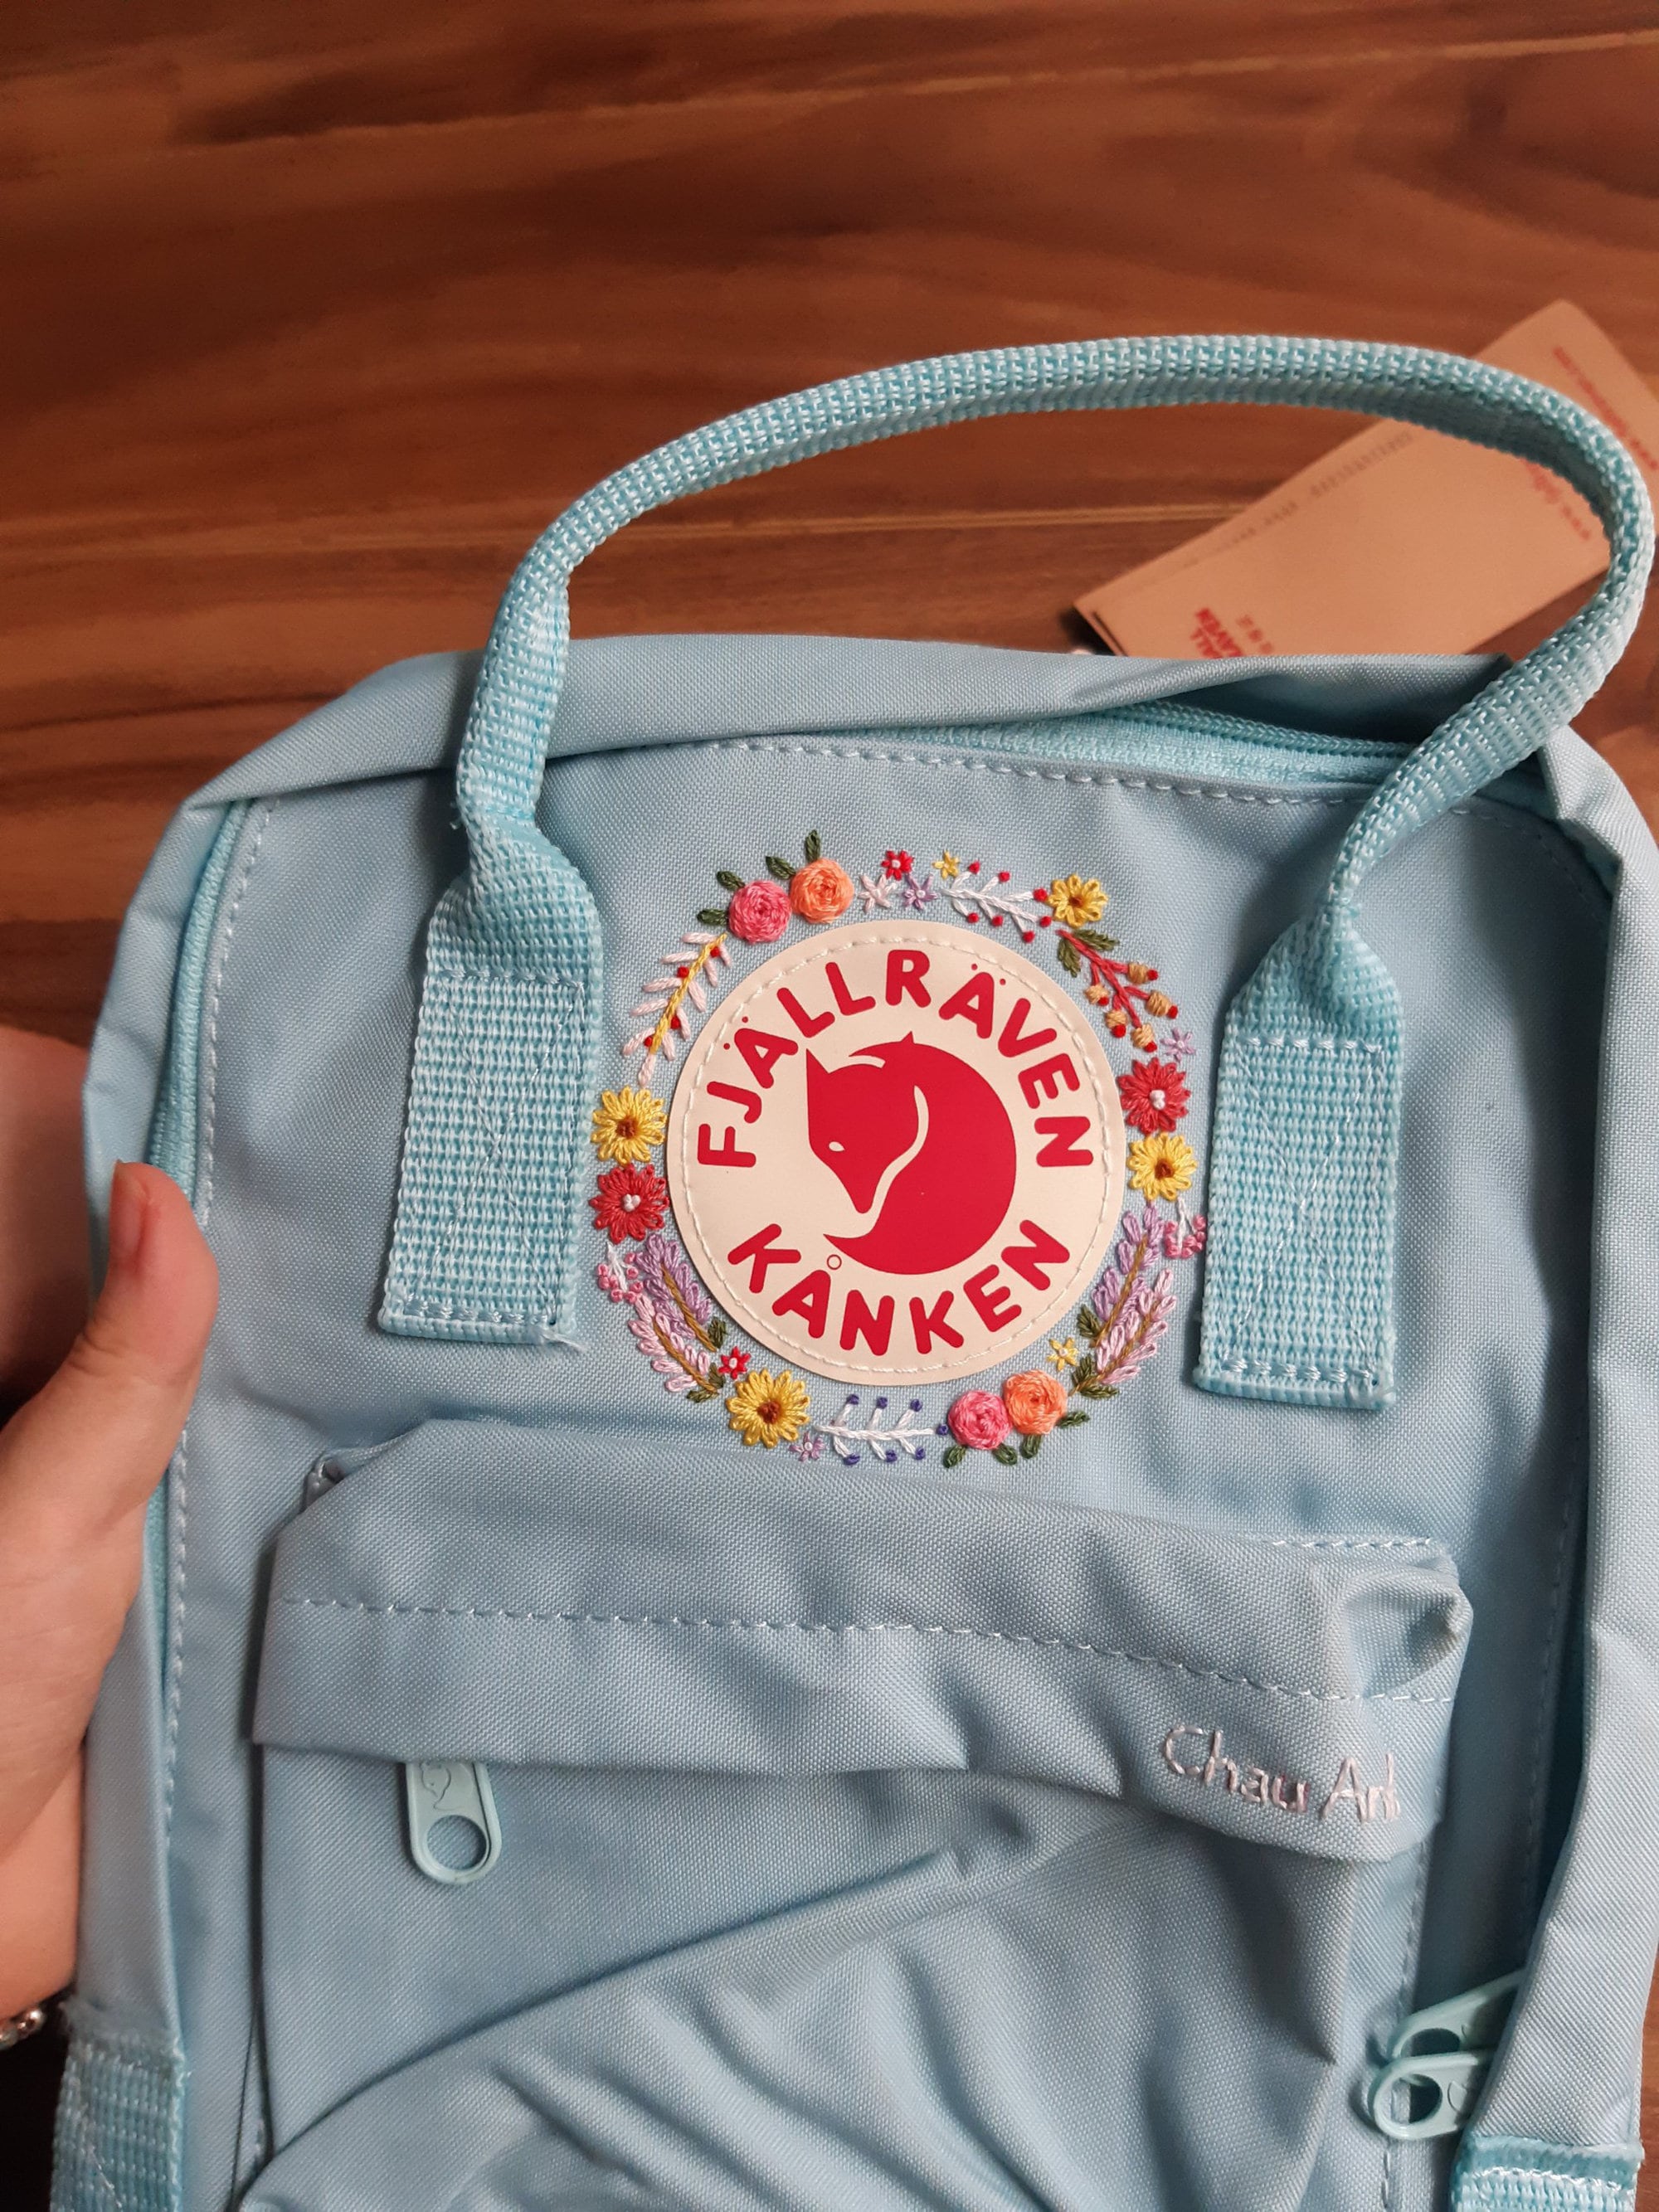 Fjallraven Women's Kanken Mini Backpack, Sky Blue, One Size